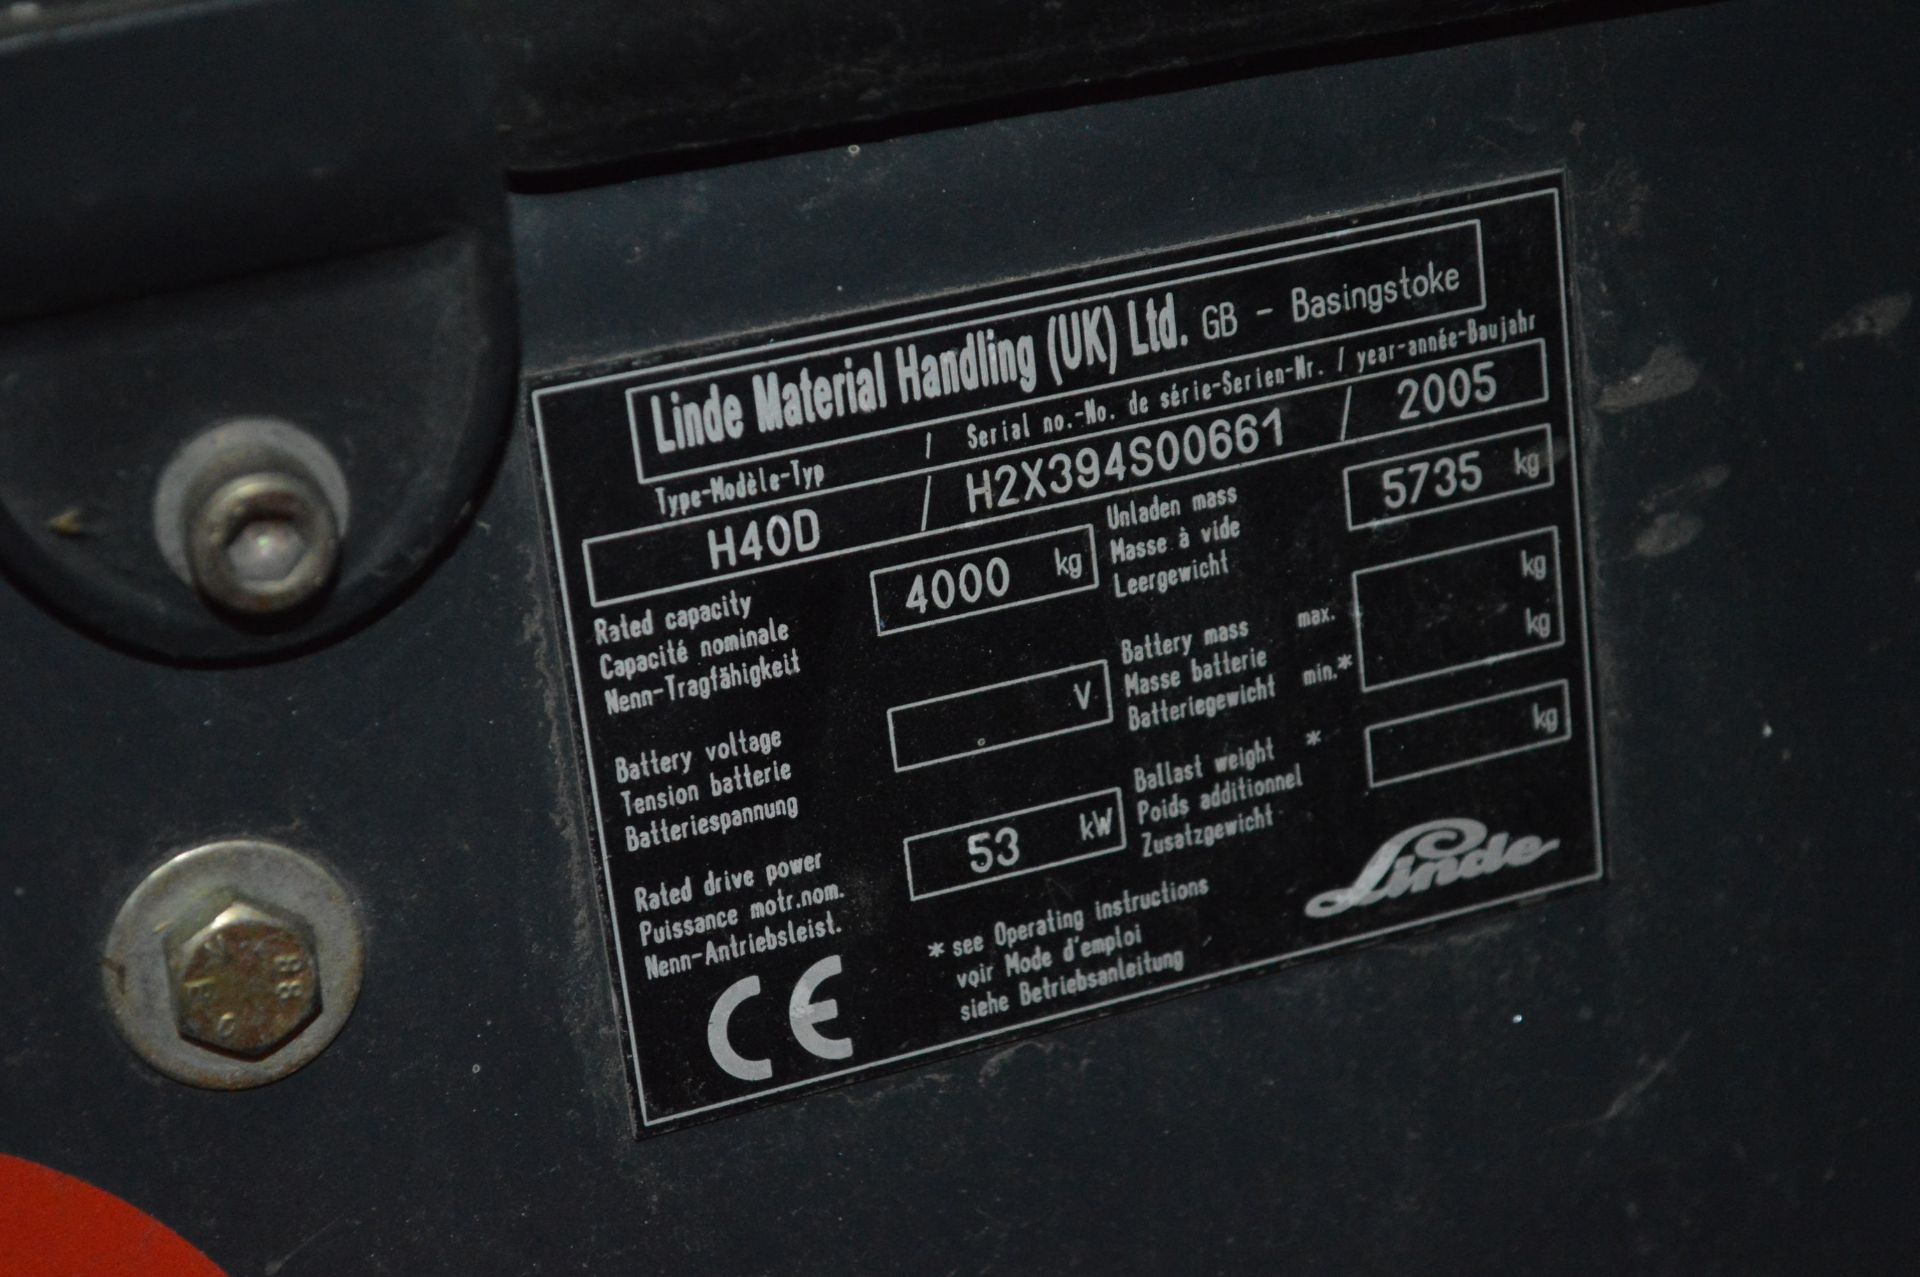 Linde H40D 4000kg cap. DIESEL ENGINE FORK LIFT TRUCK, serial no. H2X394S00661, year of manufacture - Bild 7 aus 7